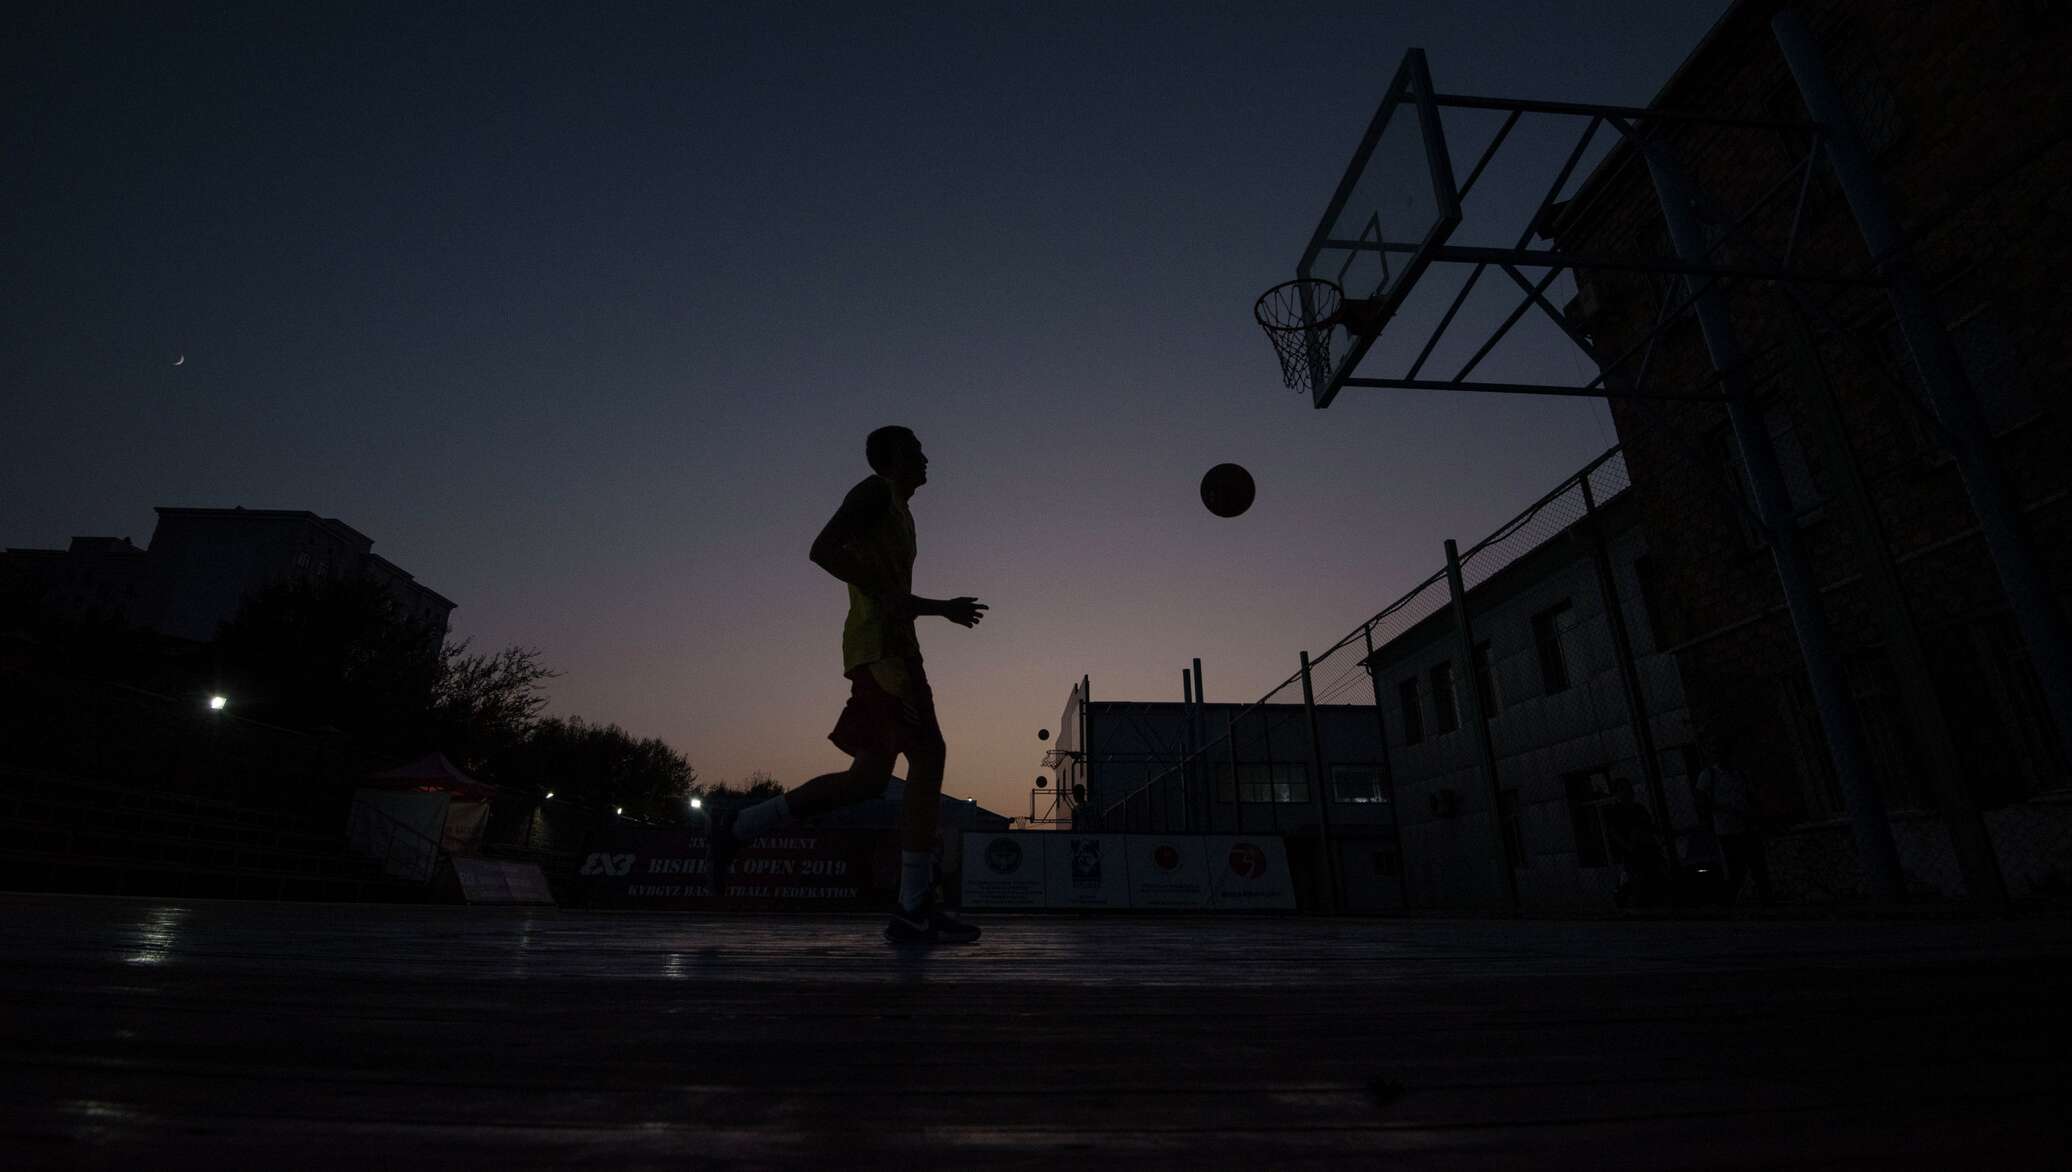 Ночные ли. Баскетбол ночью. Баскетбольная площадка в темноте. Фотосессия ночной баскетбол. Баскетбол, ночь, природа.